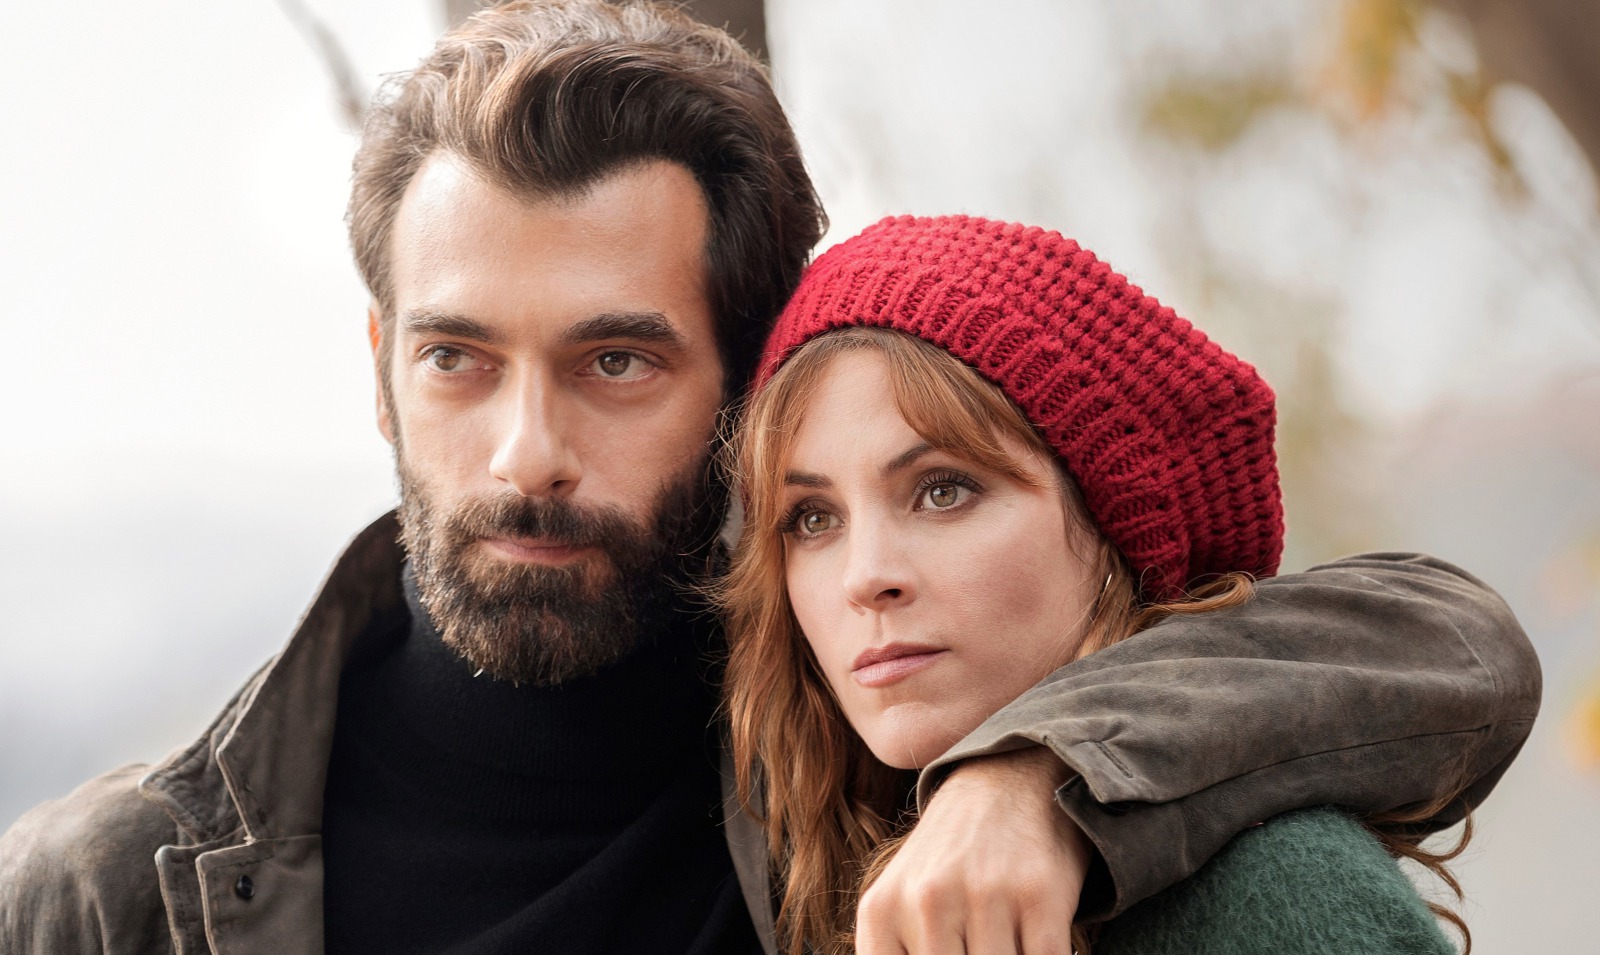 lker Kaleli y Maggie Civantos protagonizan La pasión turca, la nueva serie de Antena 3